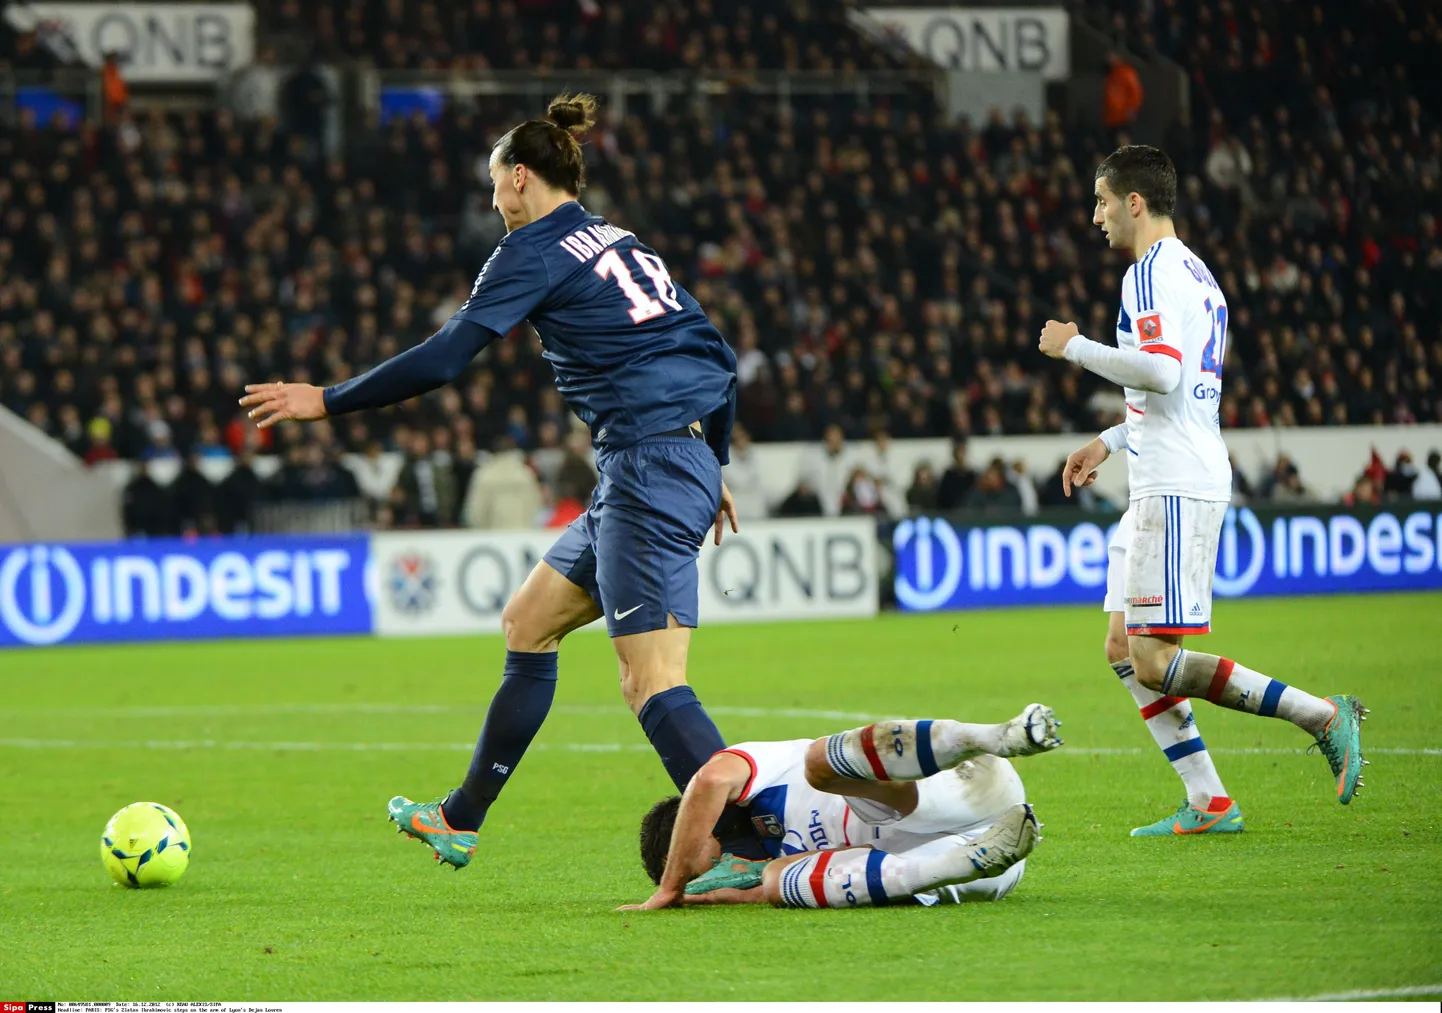 Dejan Lovrenile (pikali maas) pähe astunud Zlatan Ibrahimovic kinnitab, et ei vigastanud vastast tahtlikult.